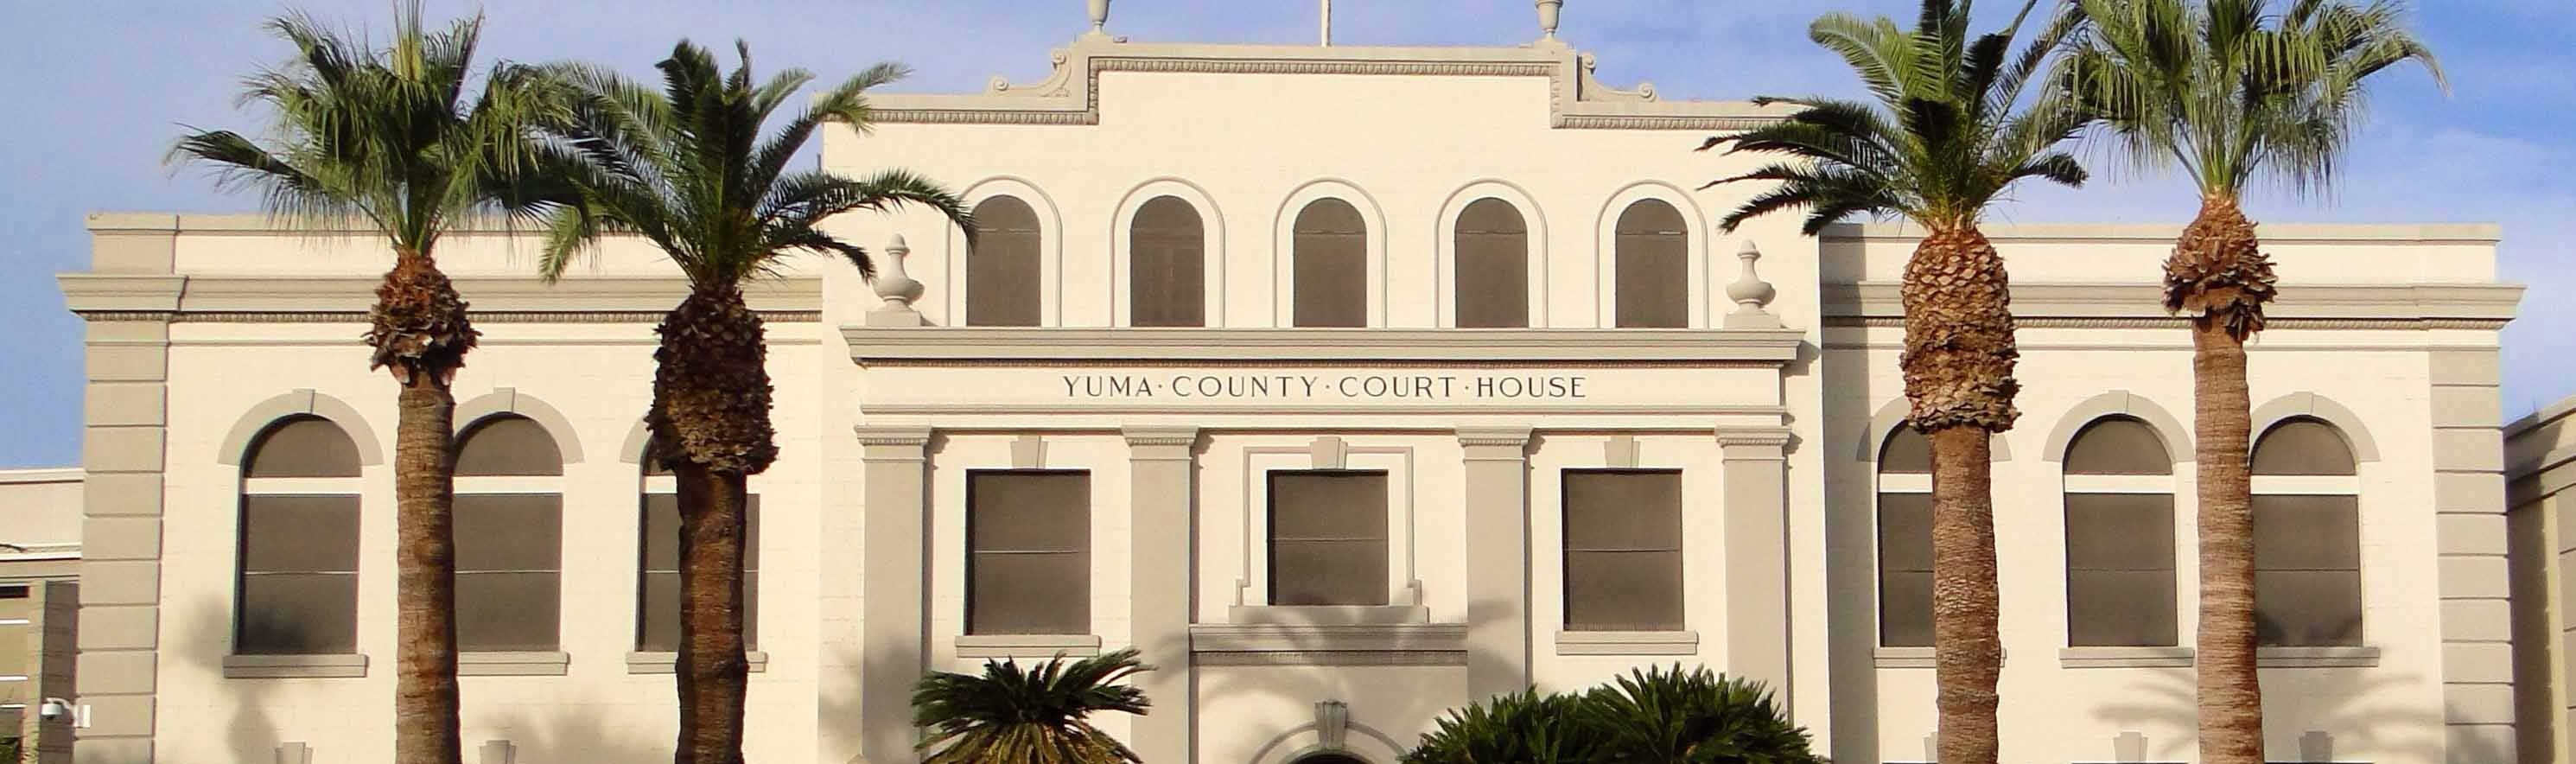 Yuma-Courthouse-exterior